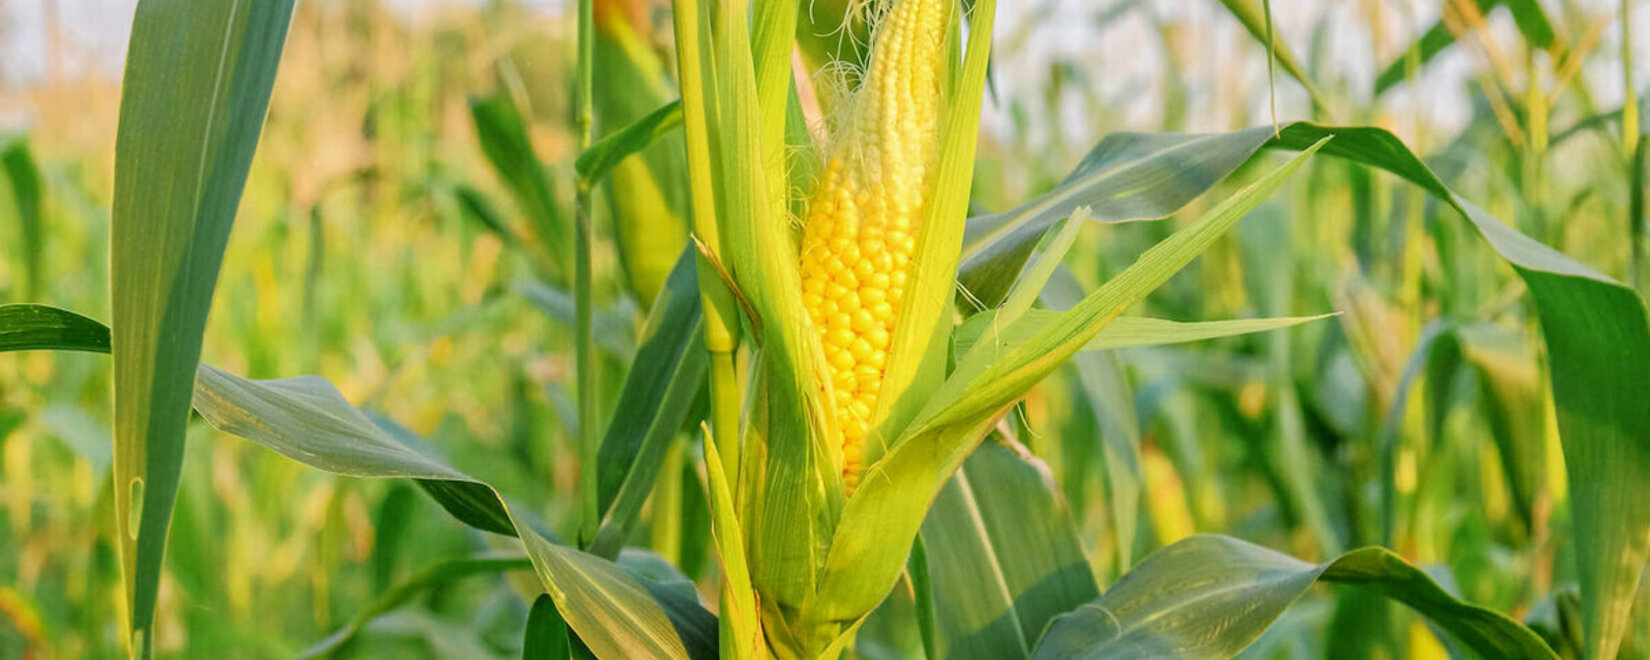 斯塔夫罗波尔将改用国产玉米种子